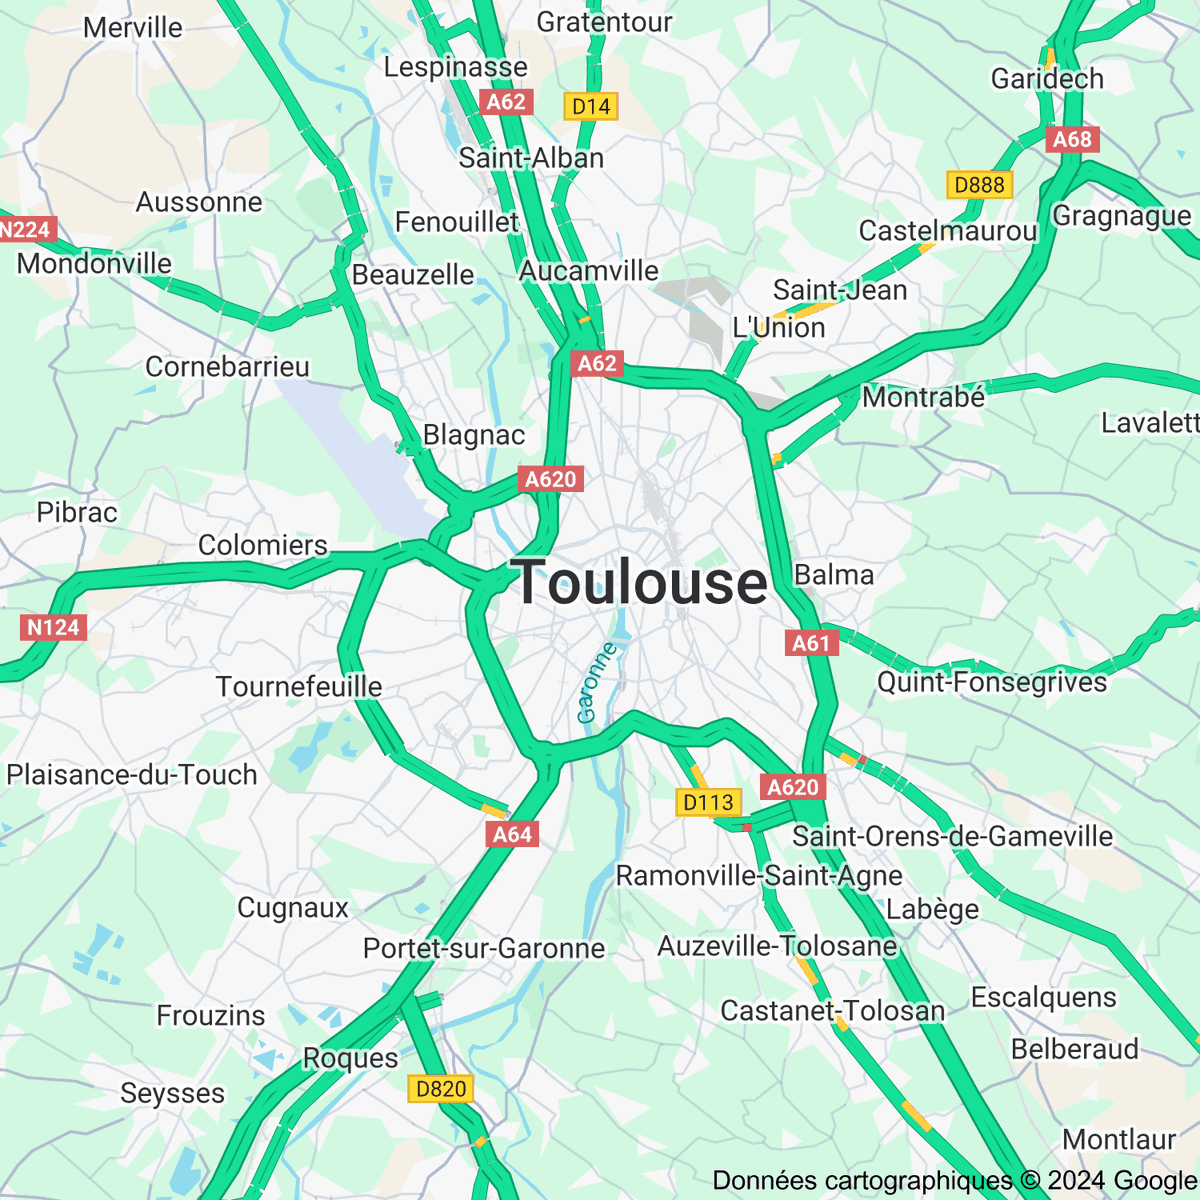 [FLASH 16:00] Trafic routier à Toulouse - toulousetrafic.com #Toulouse #ToulousePeriph #InfoTrafic